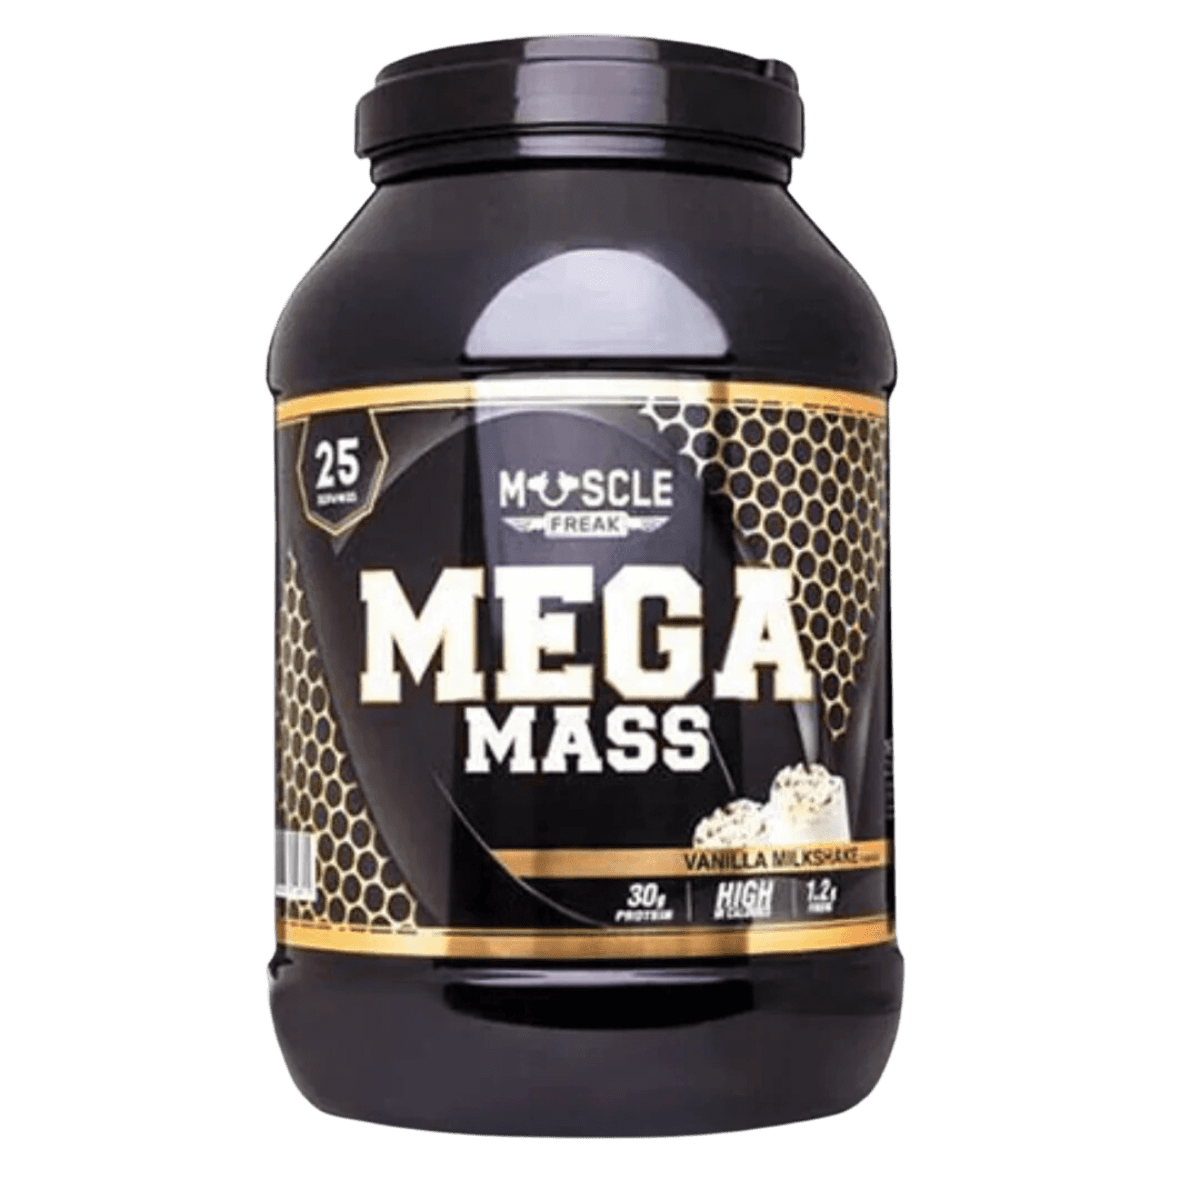 Muscle Freak Mega Mass | Muscle Freak